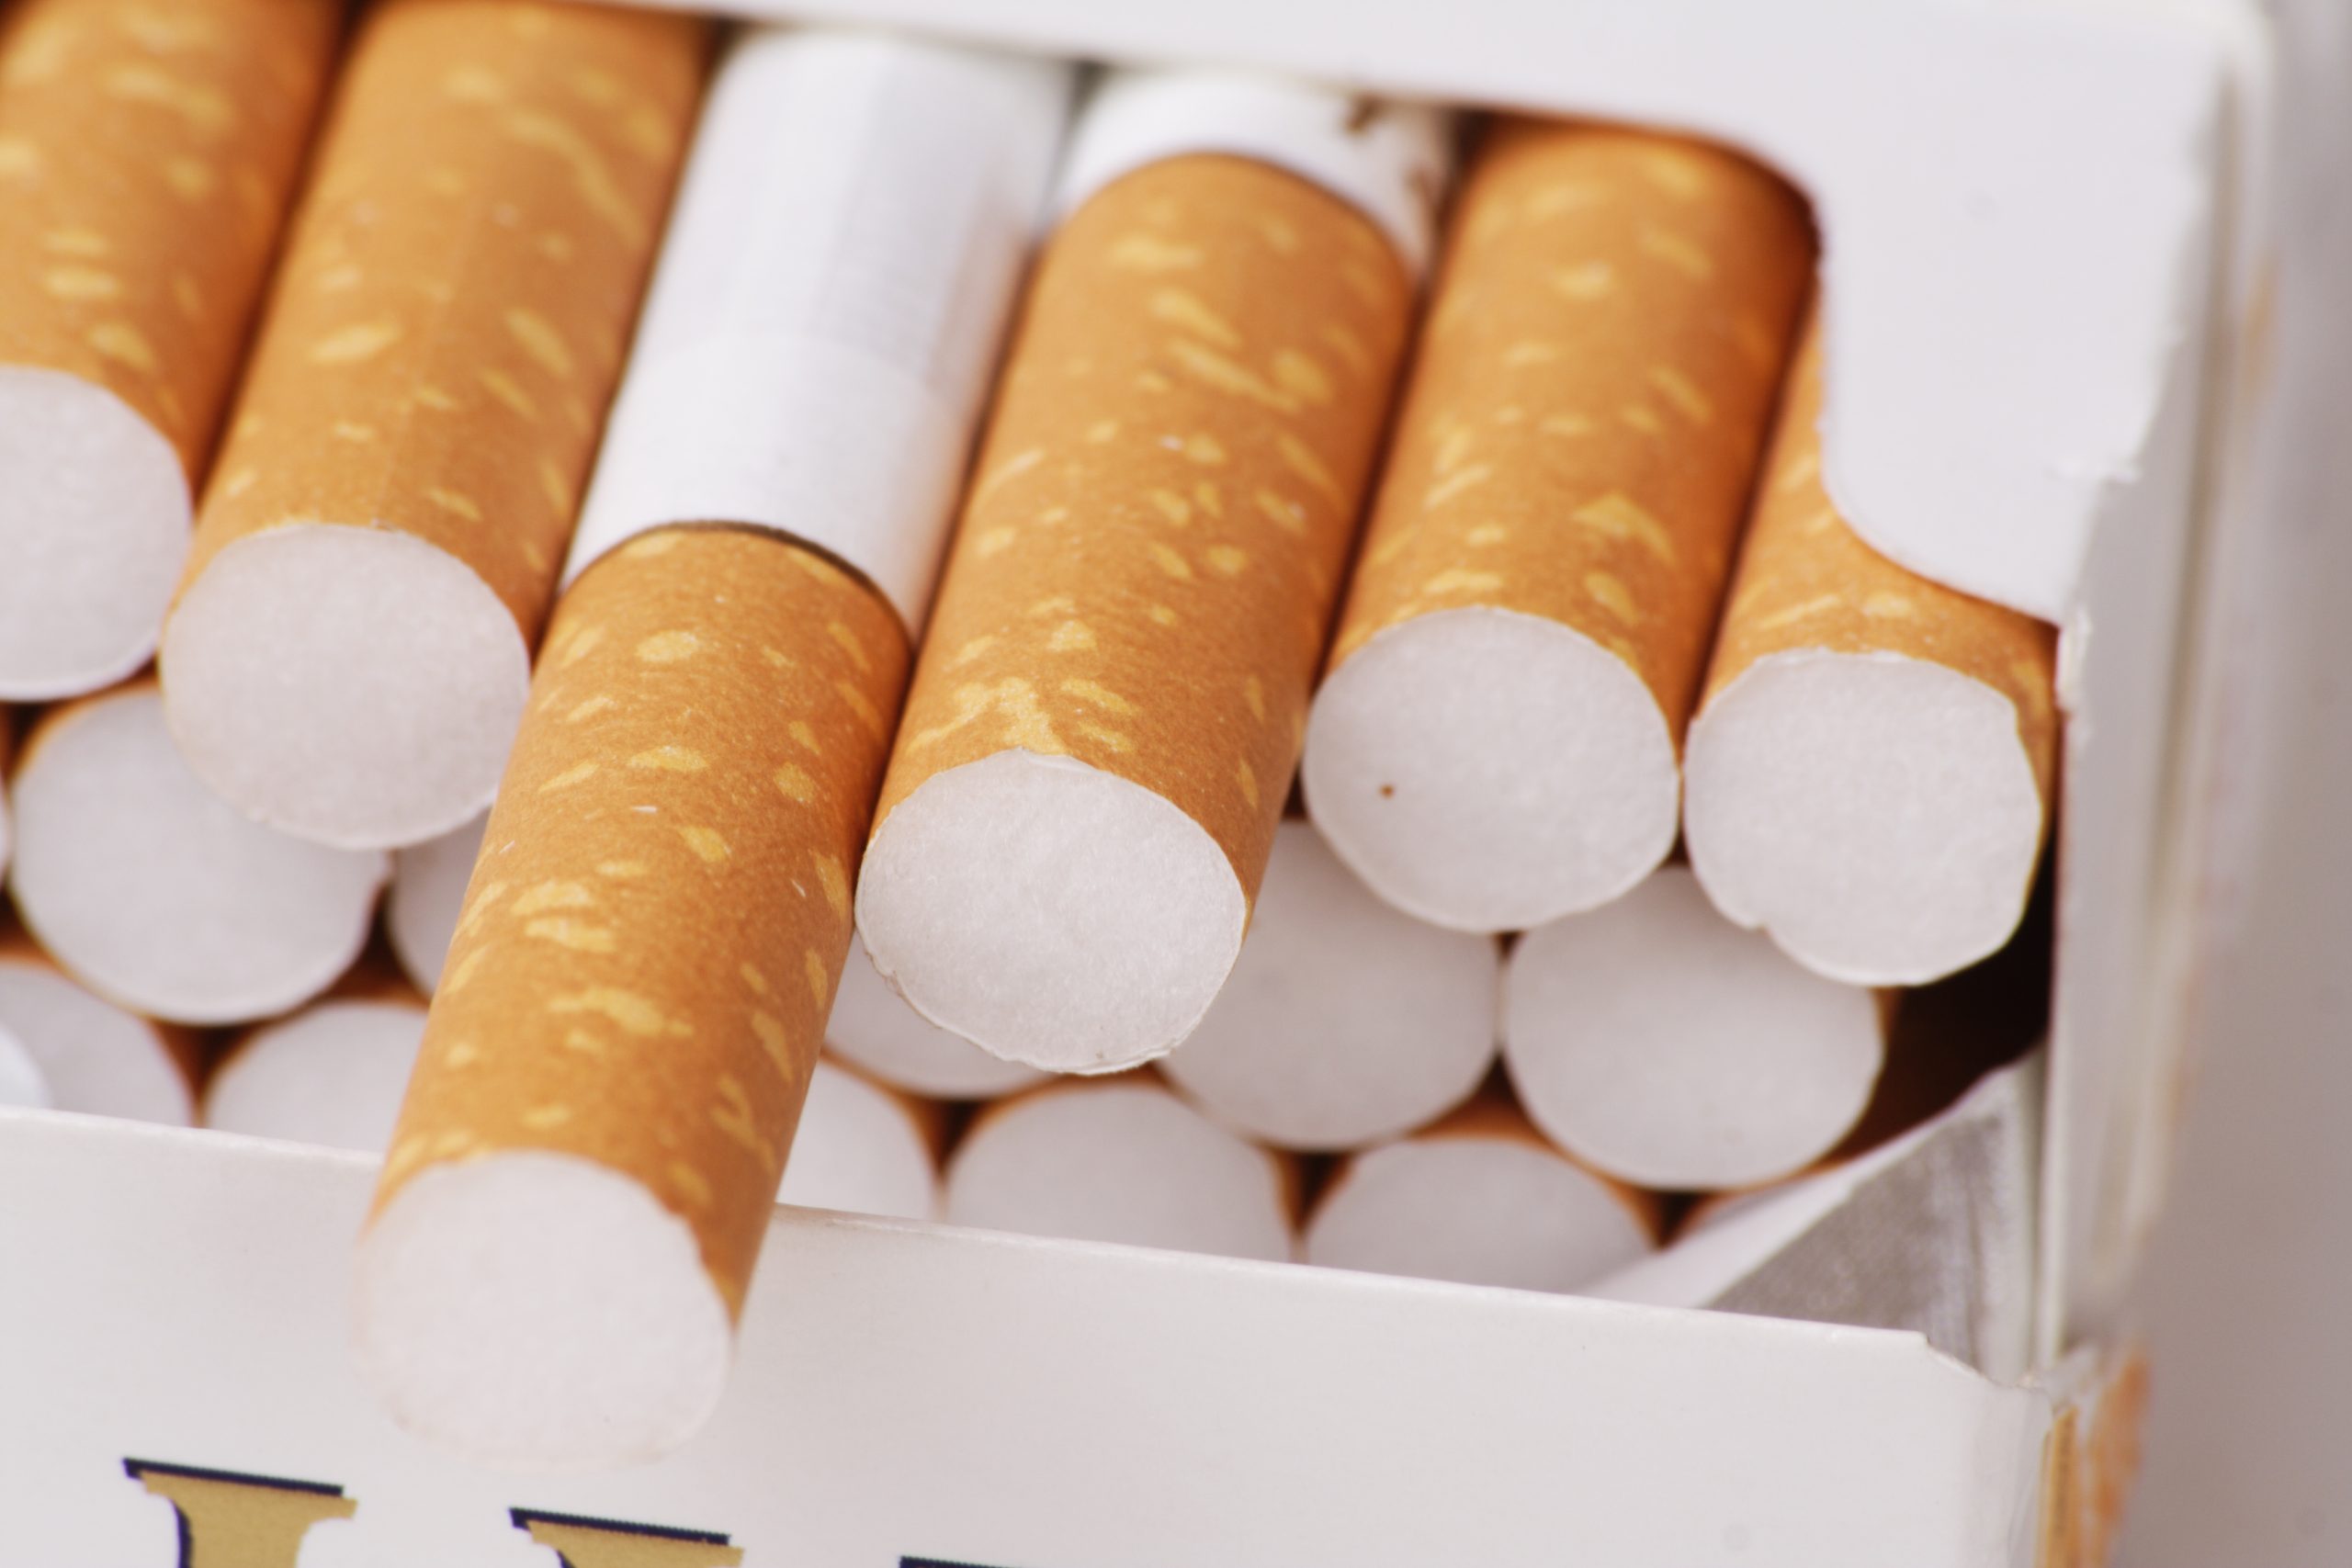 Κατασχέθηκαν σχεδόν 10 εκατομμύρια λαθραία τσιγάρα στο λιμάνι του Πειραιά